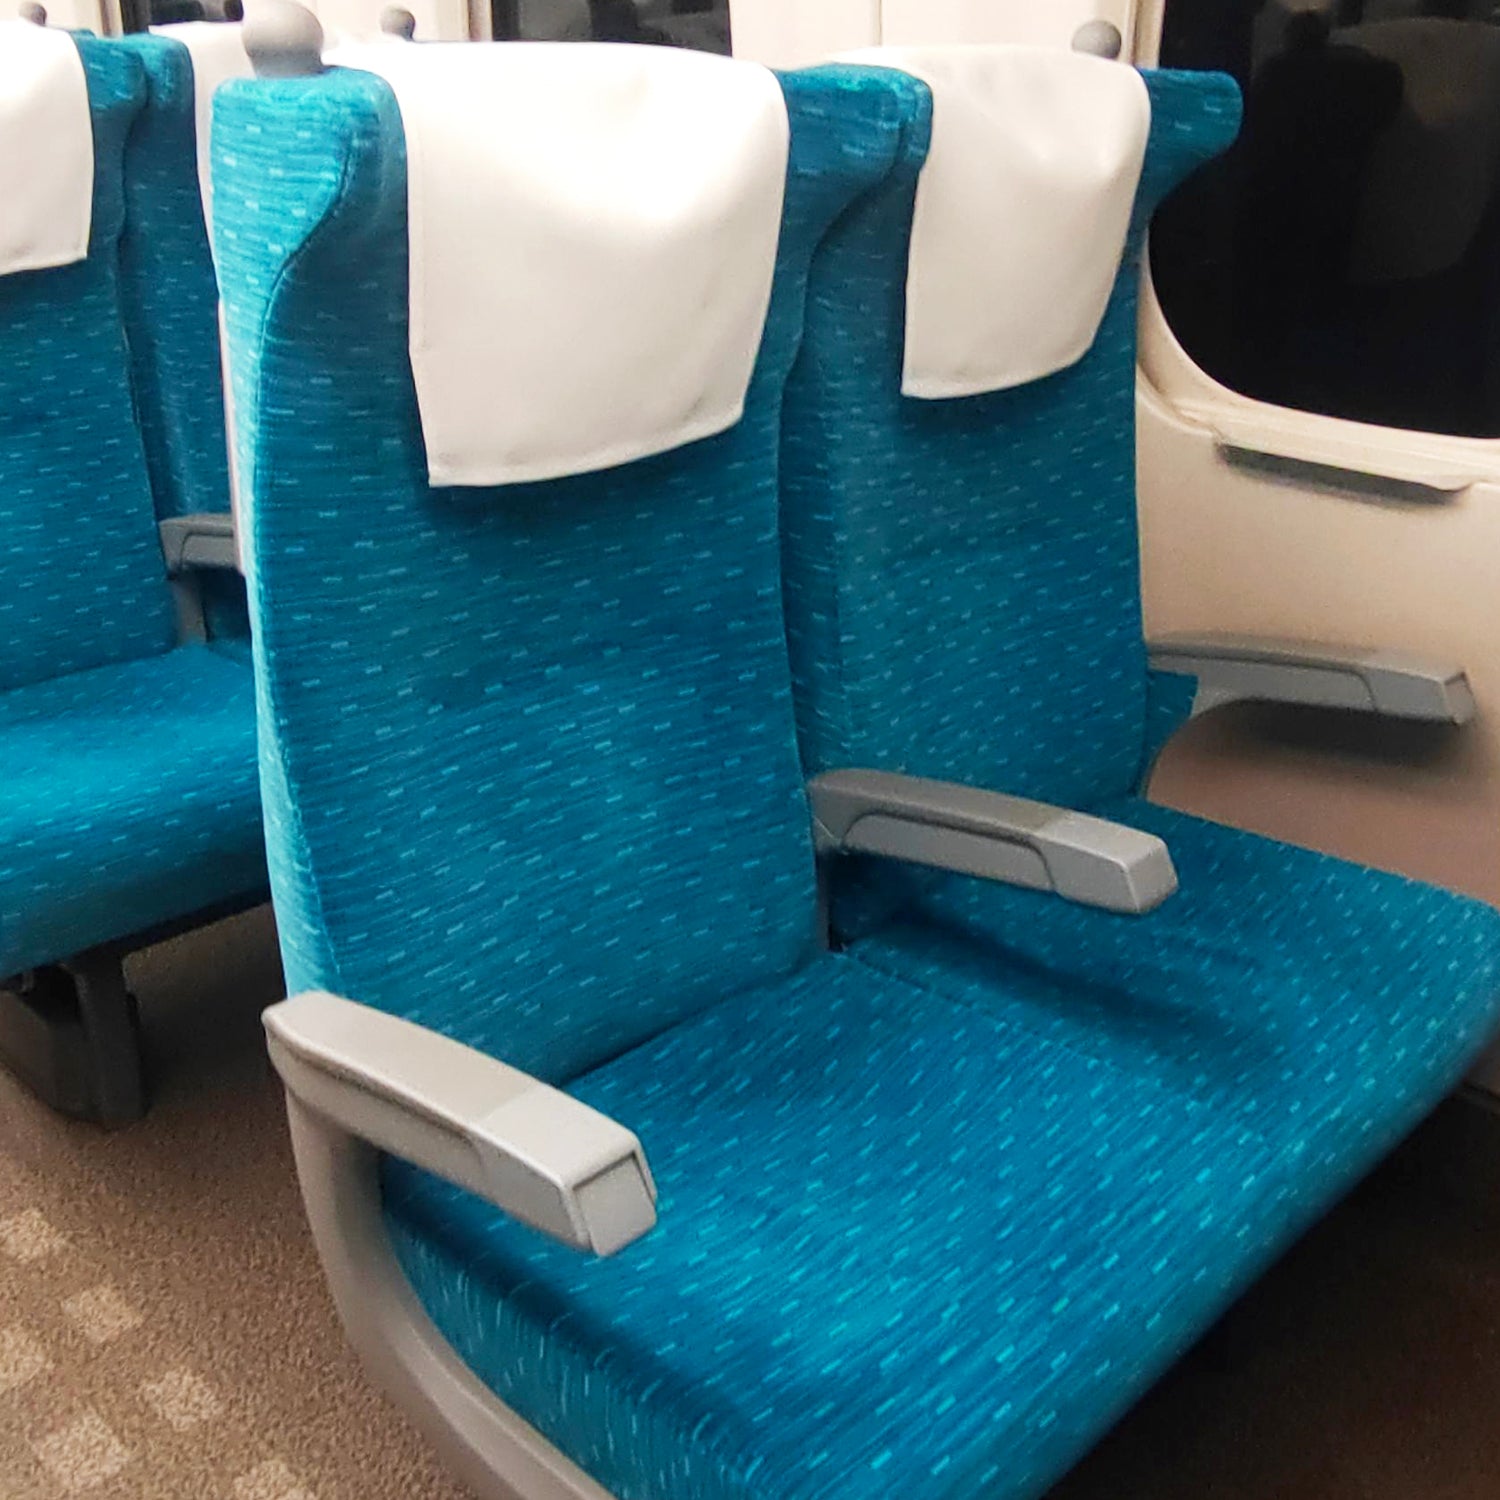 N700A東海道新幹線モケットボディバッグの本体素材には、N700A東海道新幹線の座席から取り出された生地を採用しています。